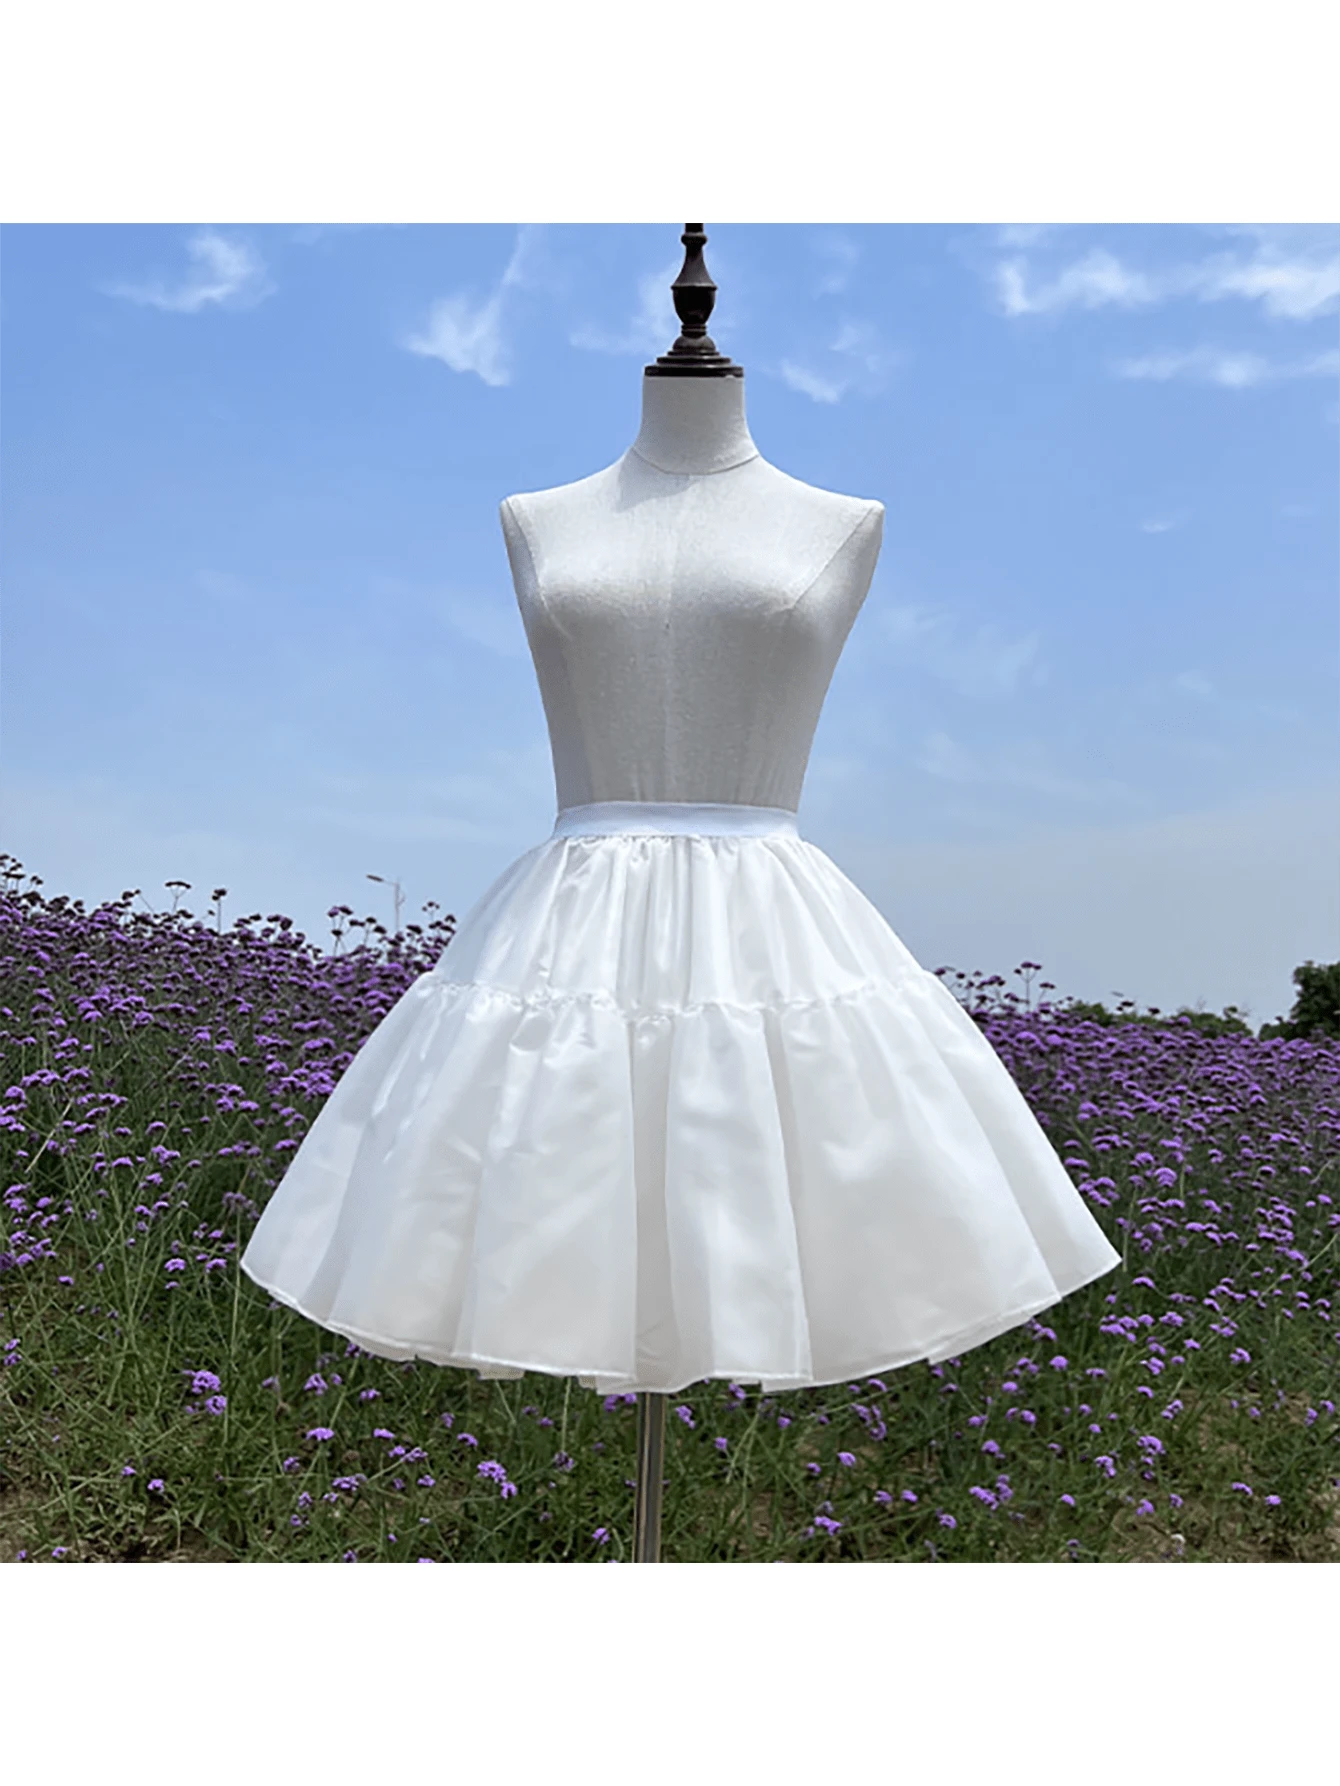 1pc Dress Petticoat Crinoline For Lolita Daily Wear